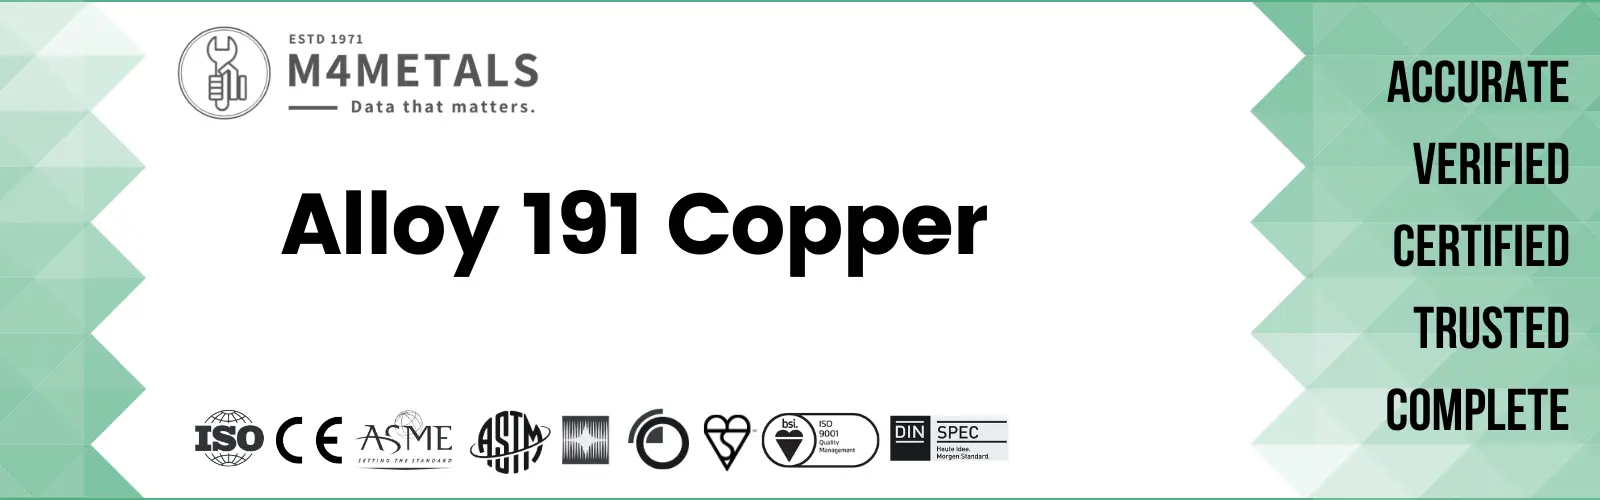 Copper Alloy 191